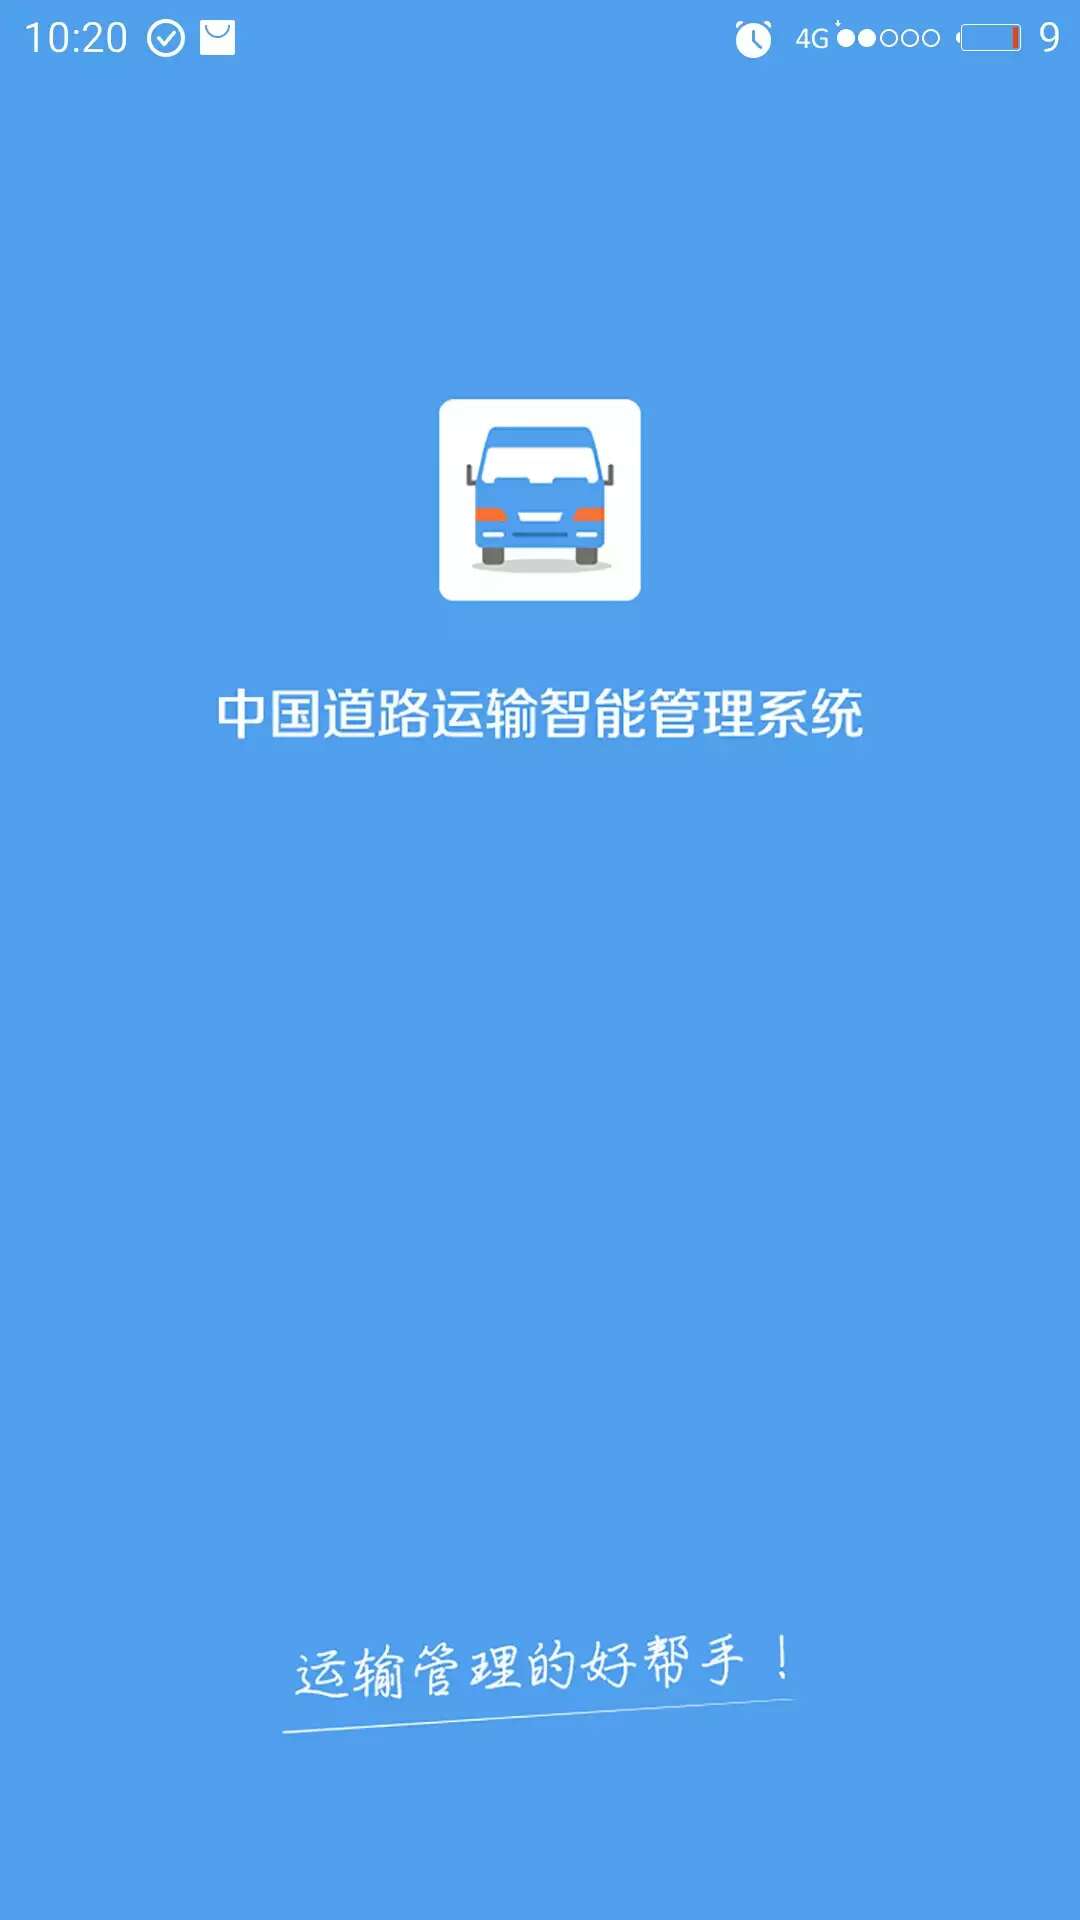 智慧社区app开发,上海app开发公司报价低